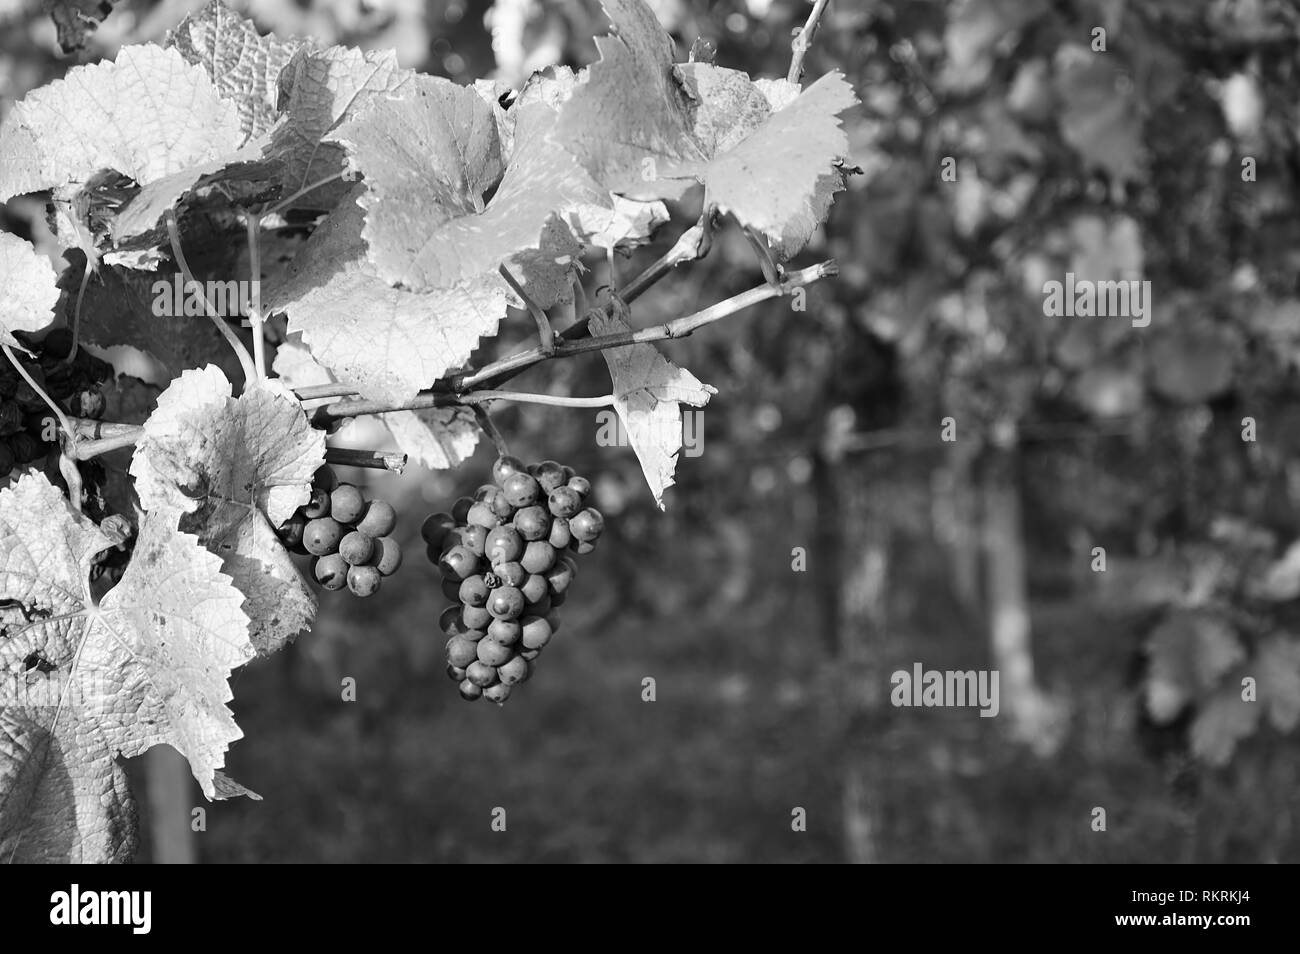 Die Trauben reifen Trauben am Weinstock hängen wie ein Schwarzweiß-Bild Stockfoto